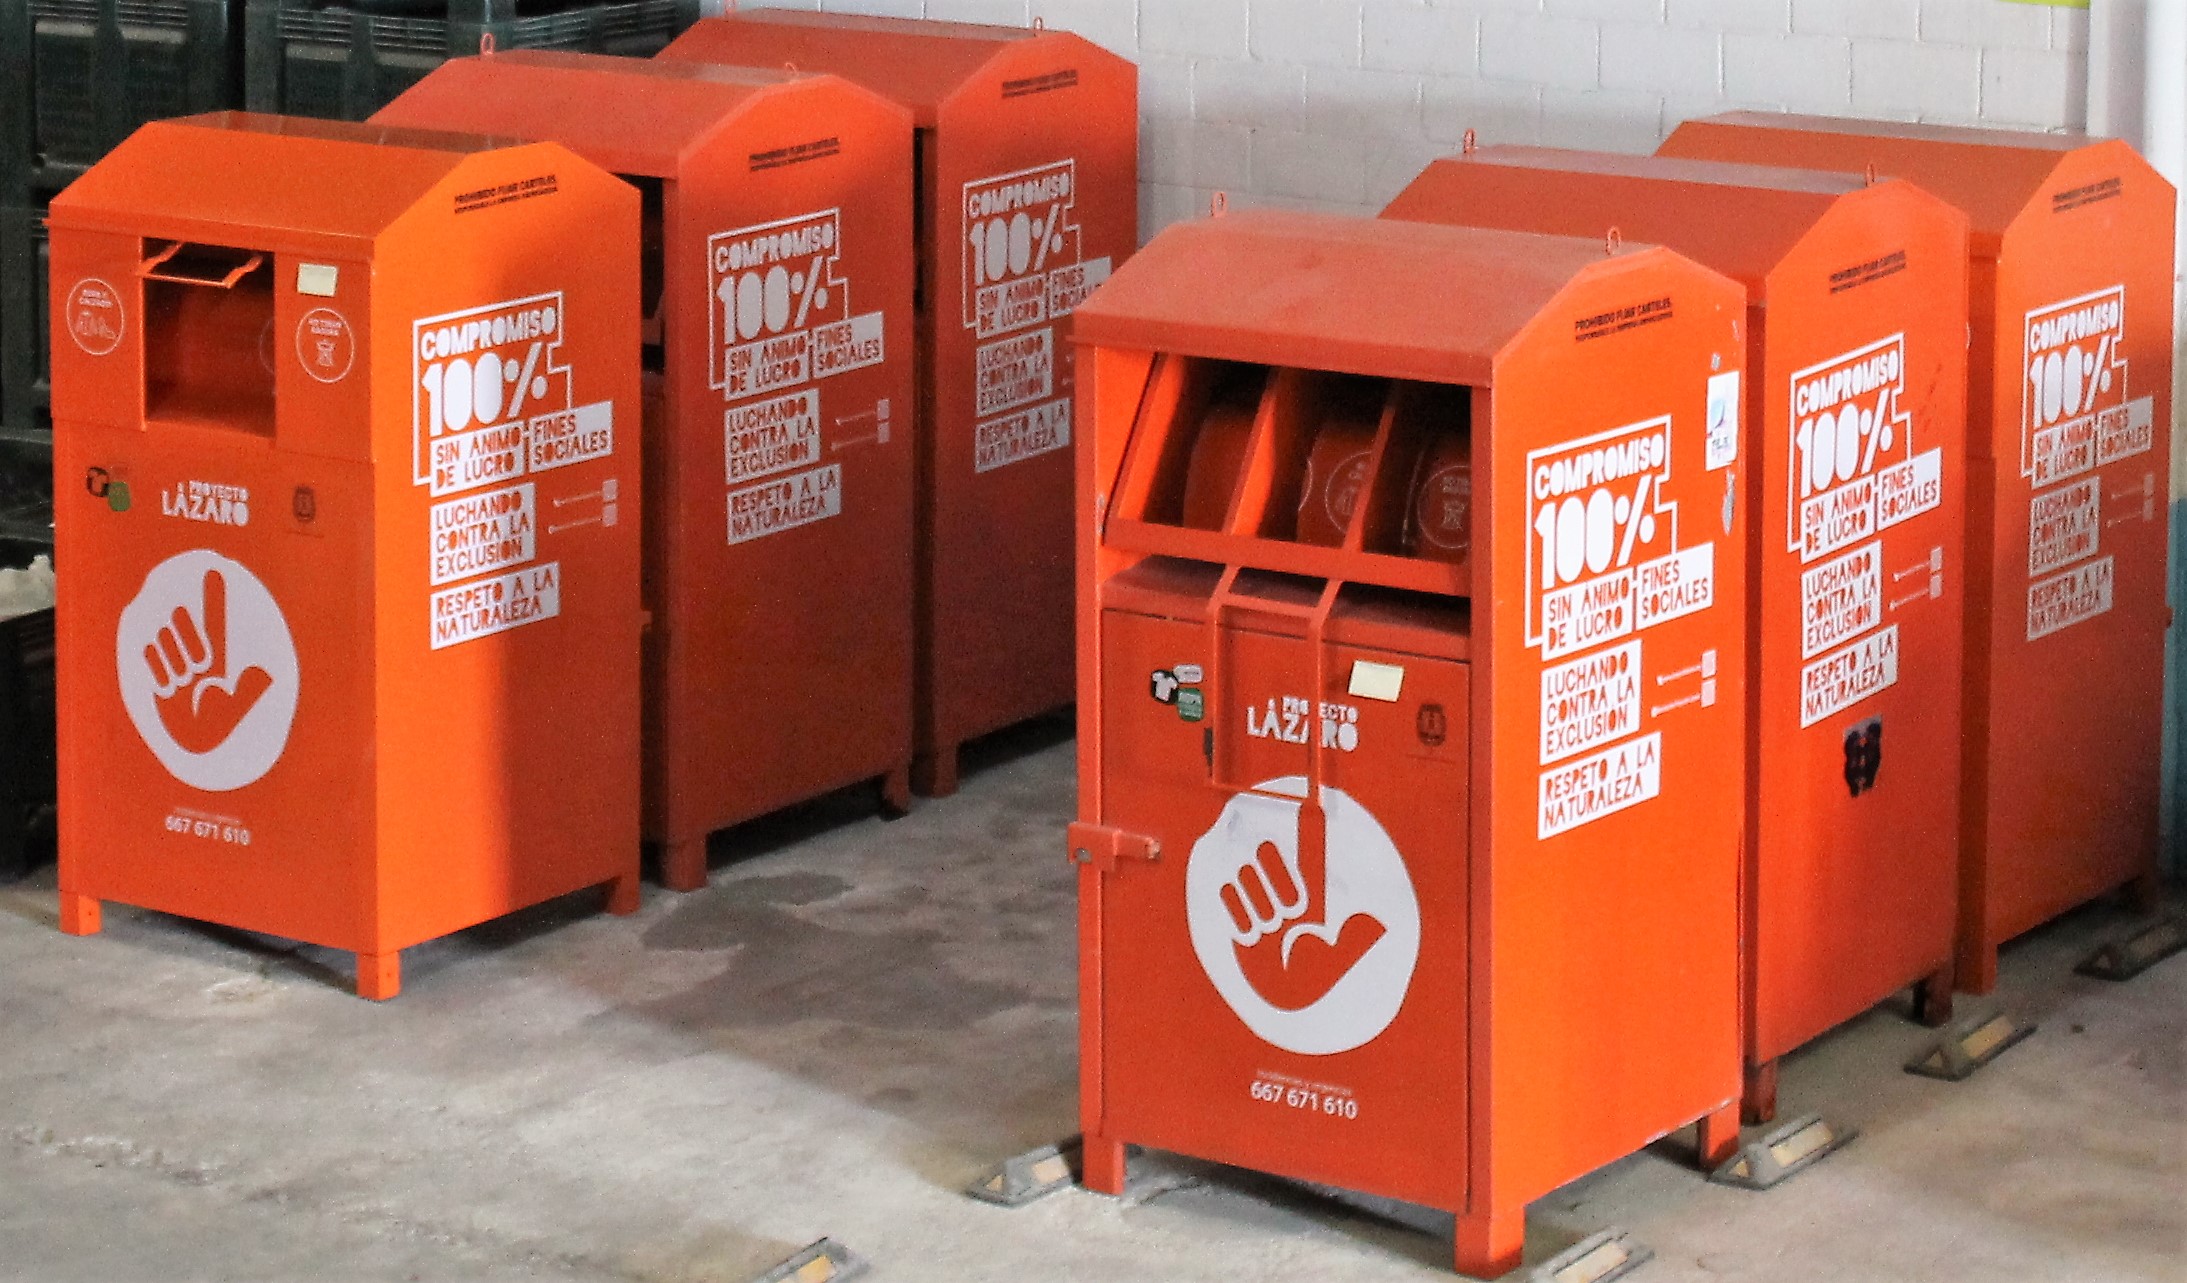 Sabes para qué sirve el contenedor de basura naranja?